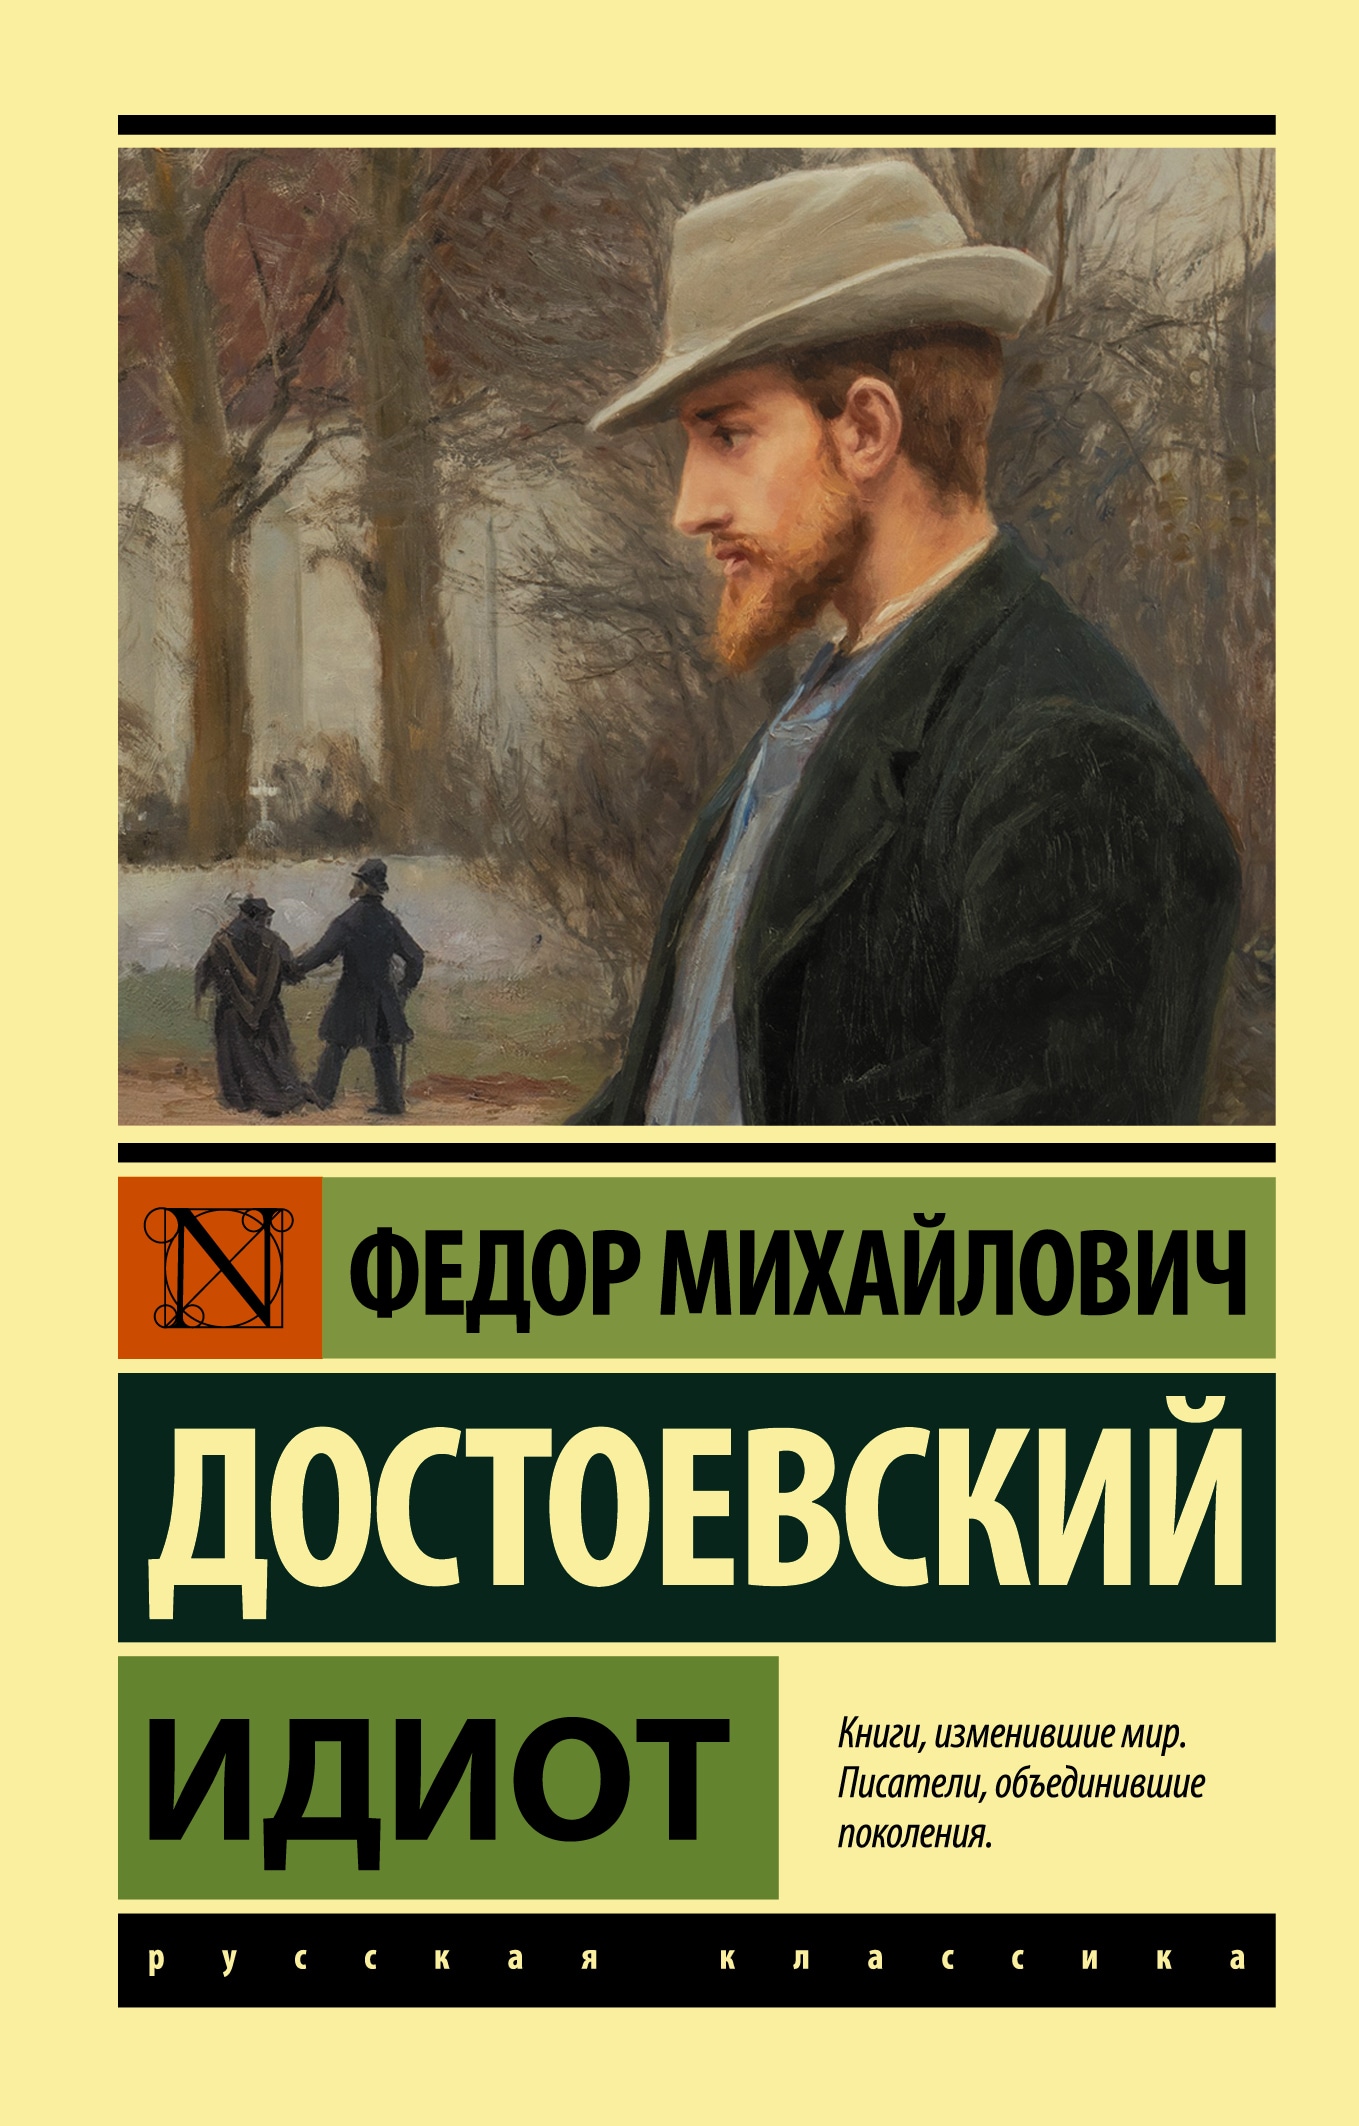 Книга «Идиот» Федор Достоевский — 2021 г.